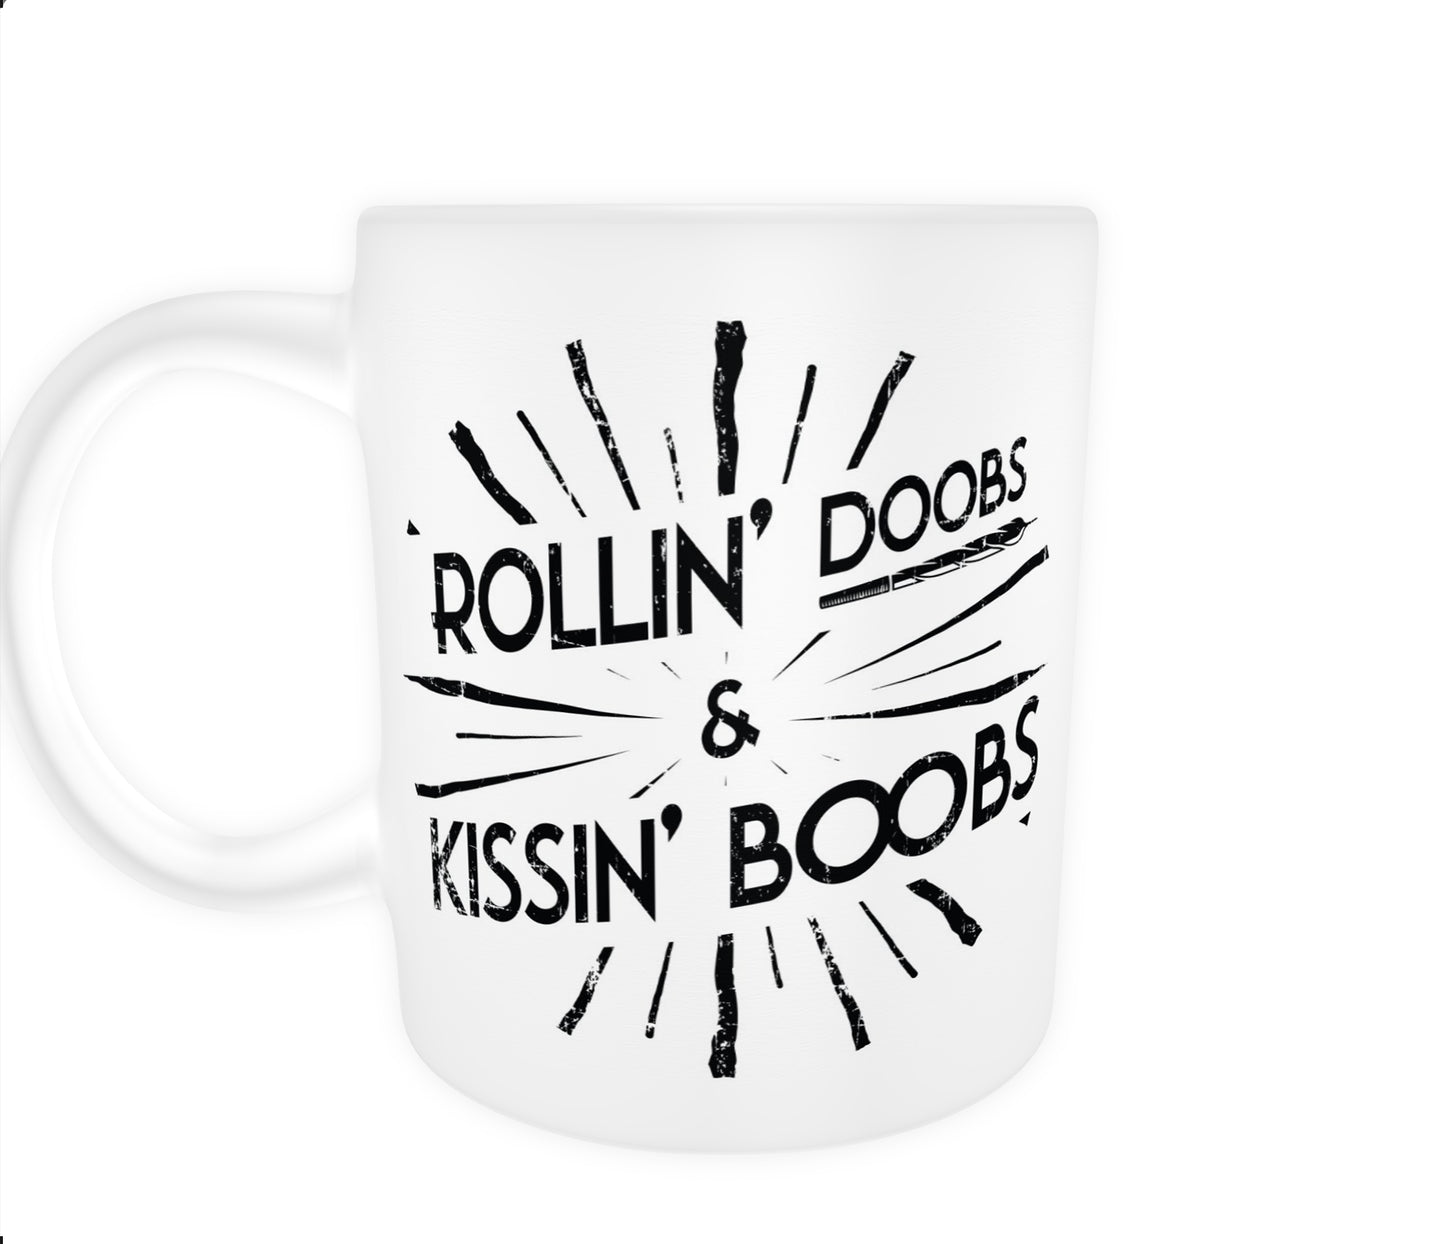 Rollin' Doobs & Kissin' Boobs Mugs